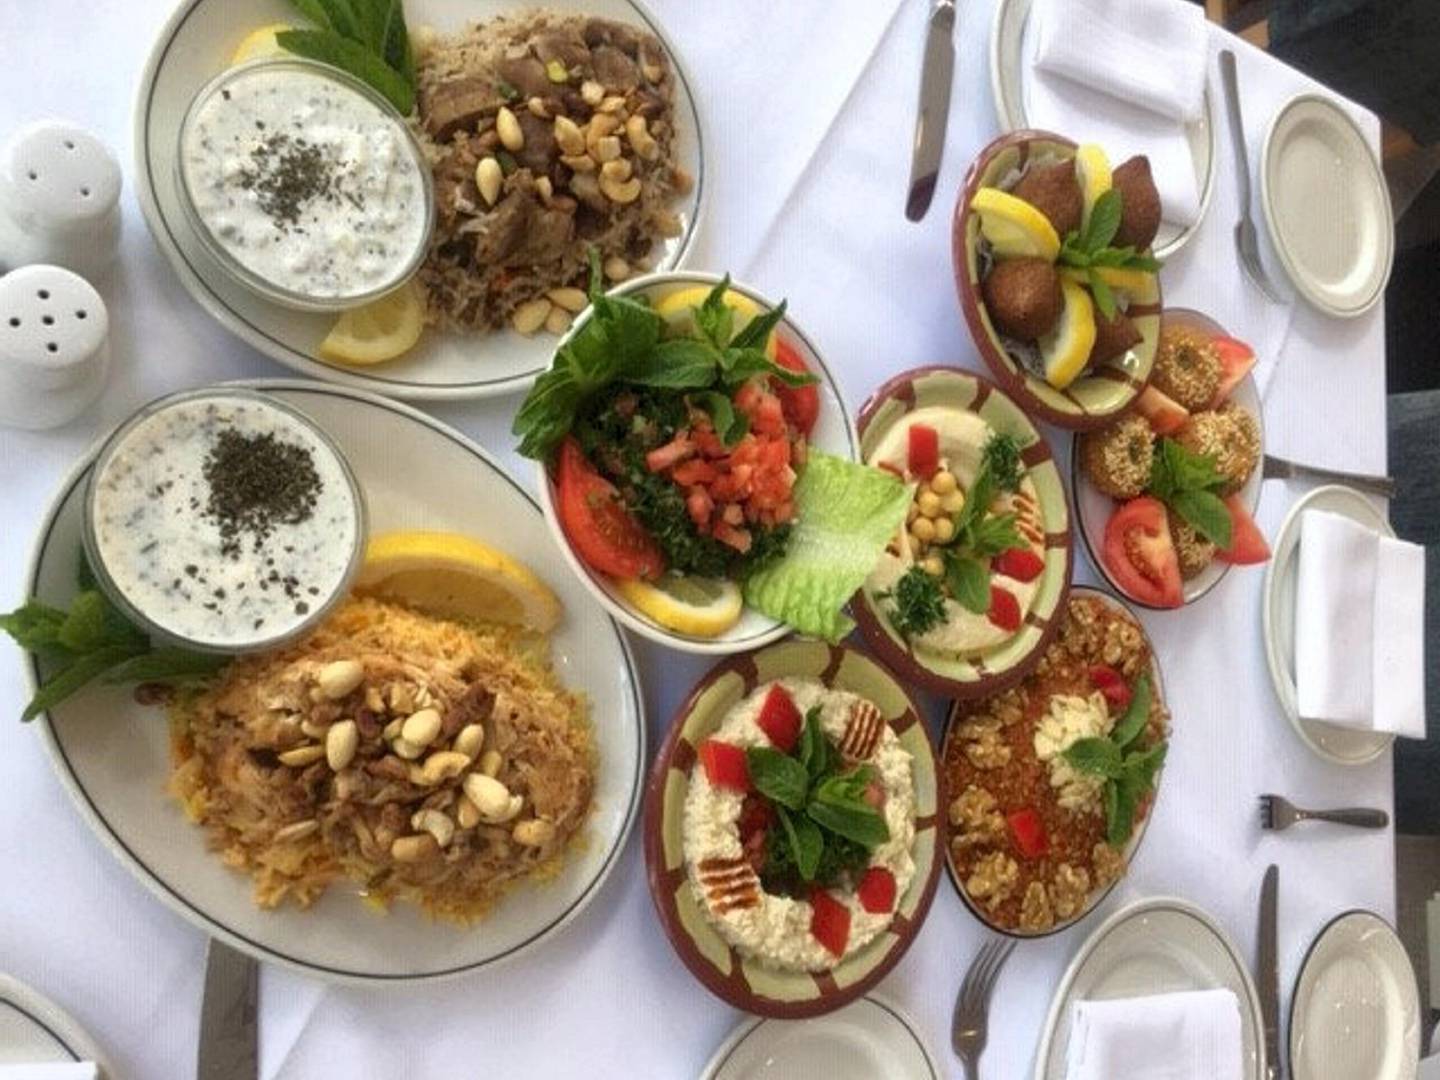 Dishes at Lebanese restaurant Al Wala 